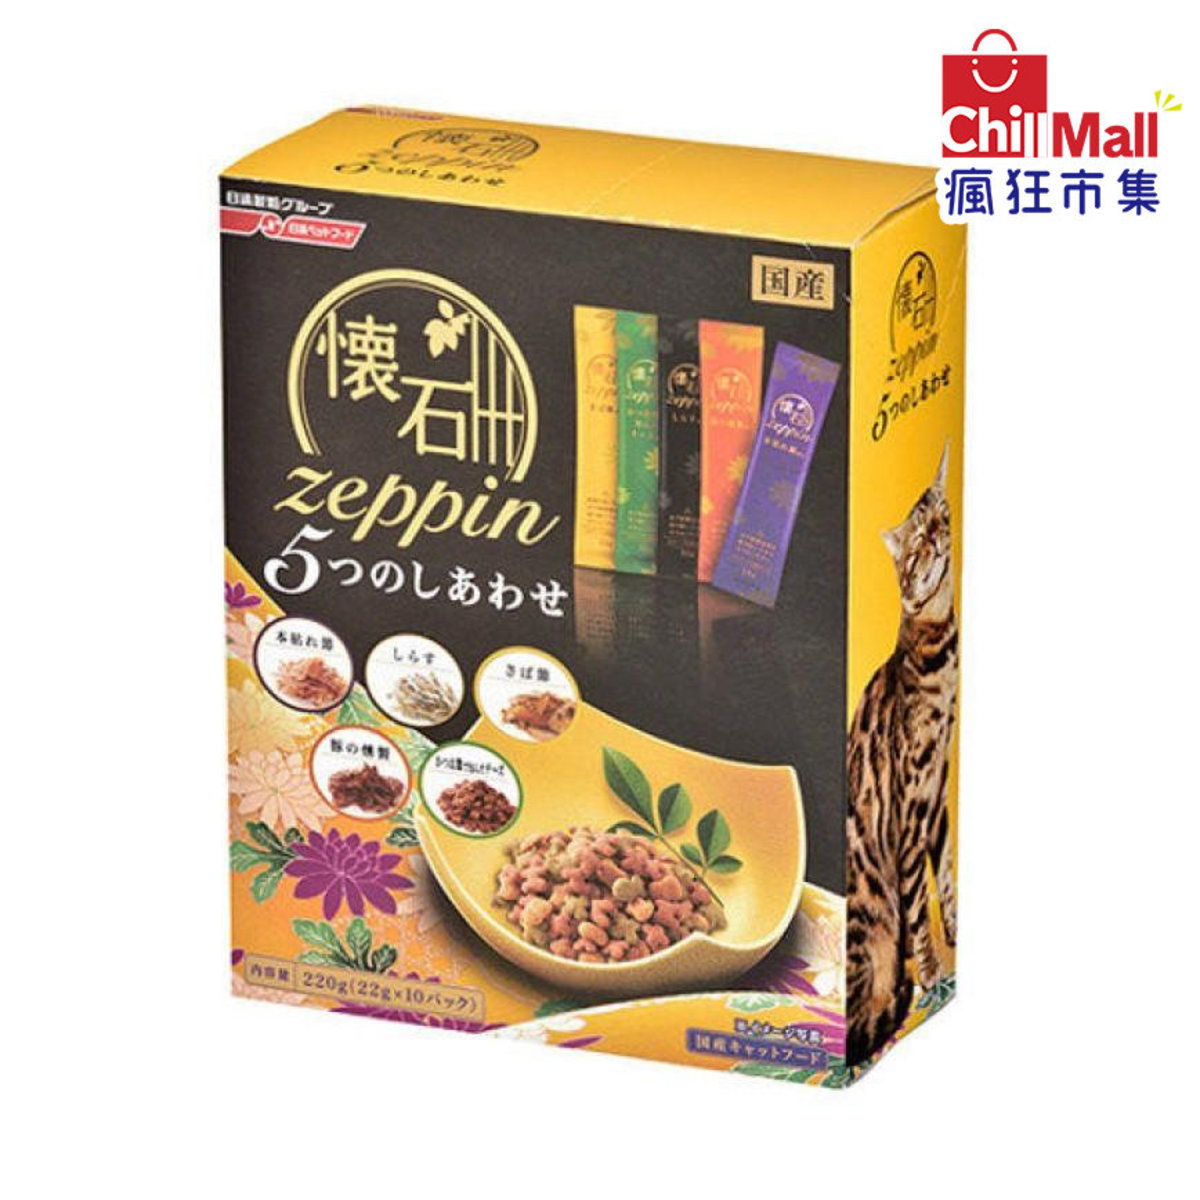 日本日清懷石料理貓小食 鯖魚奶酪及煙肉味 220g (黃) 2025890